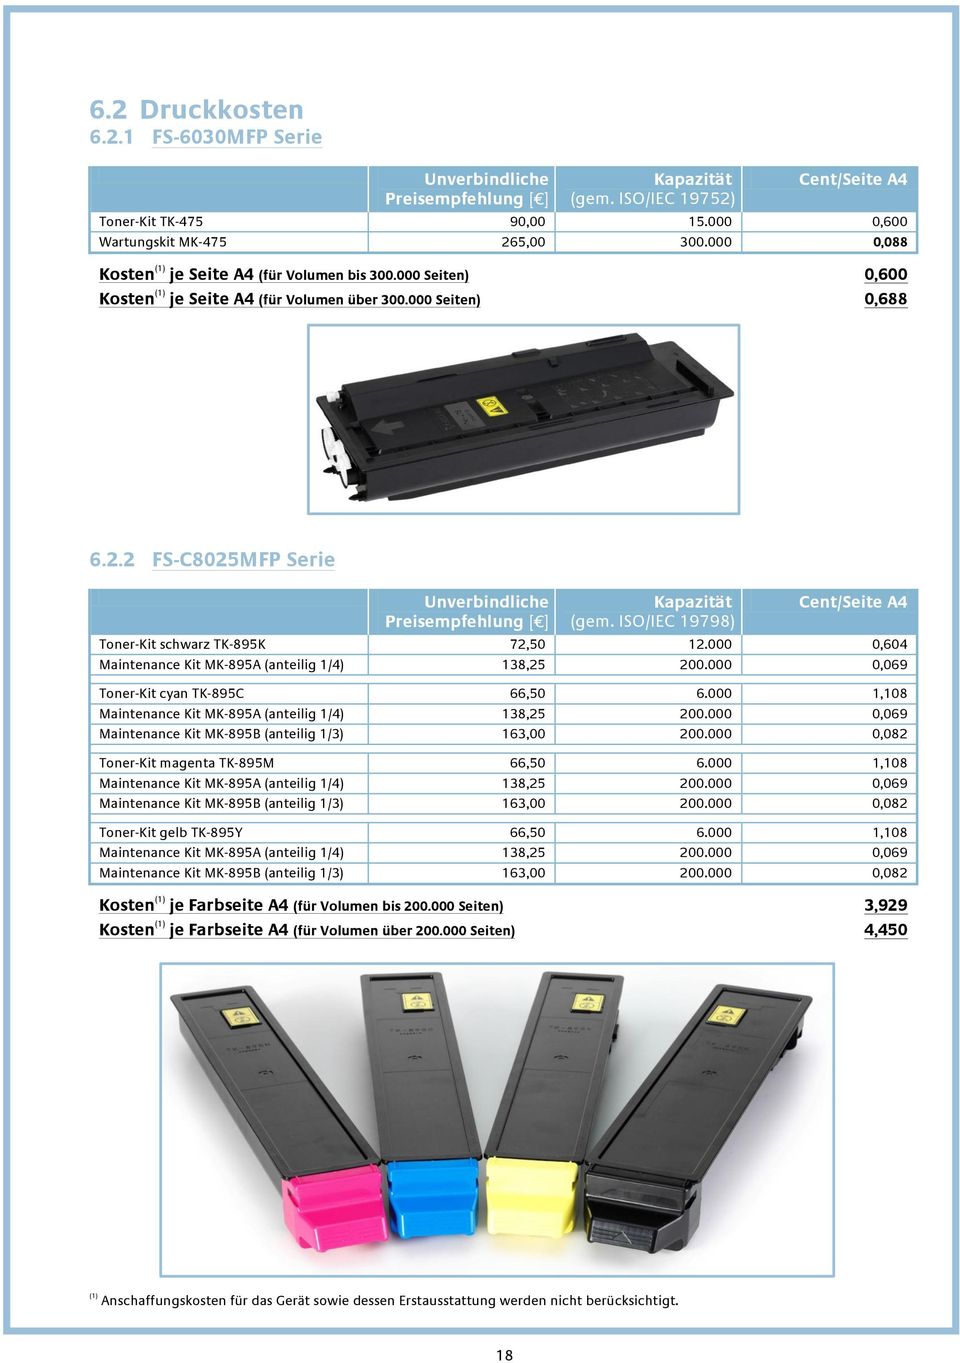 2 FS-C8025MFP Serie Unverbindliche Preisempfehlung [ ] Kapazität (gem. ISO/IEC 19798) Cent/Seite A4 Toner-Kit schwarz TK-895K 72,50 12.000 0,604 Maintenance Kit MK-895A (anteilig 1/4) 138,25 200.